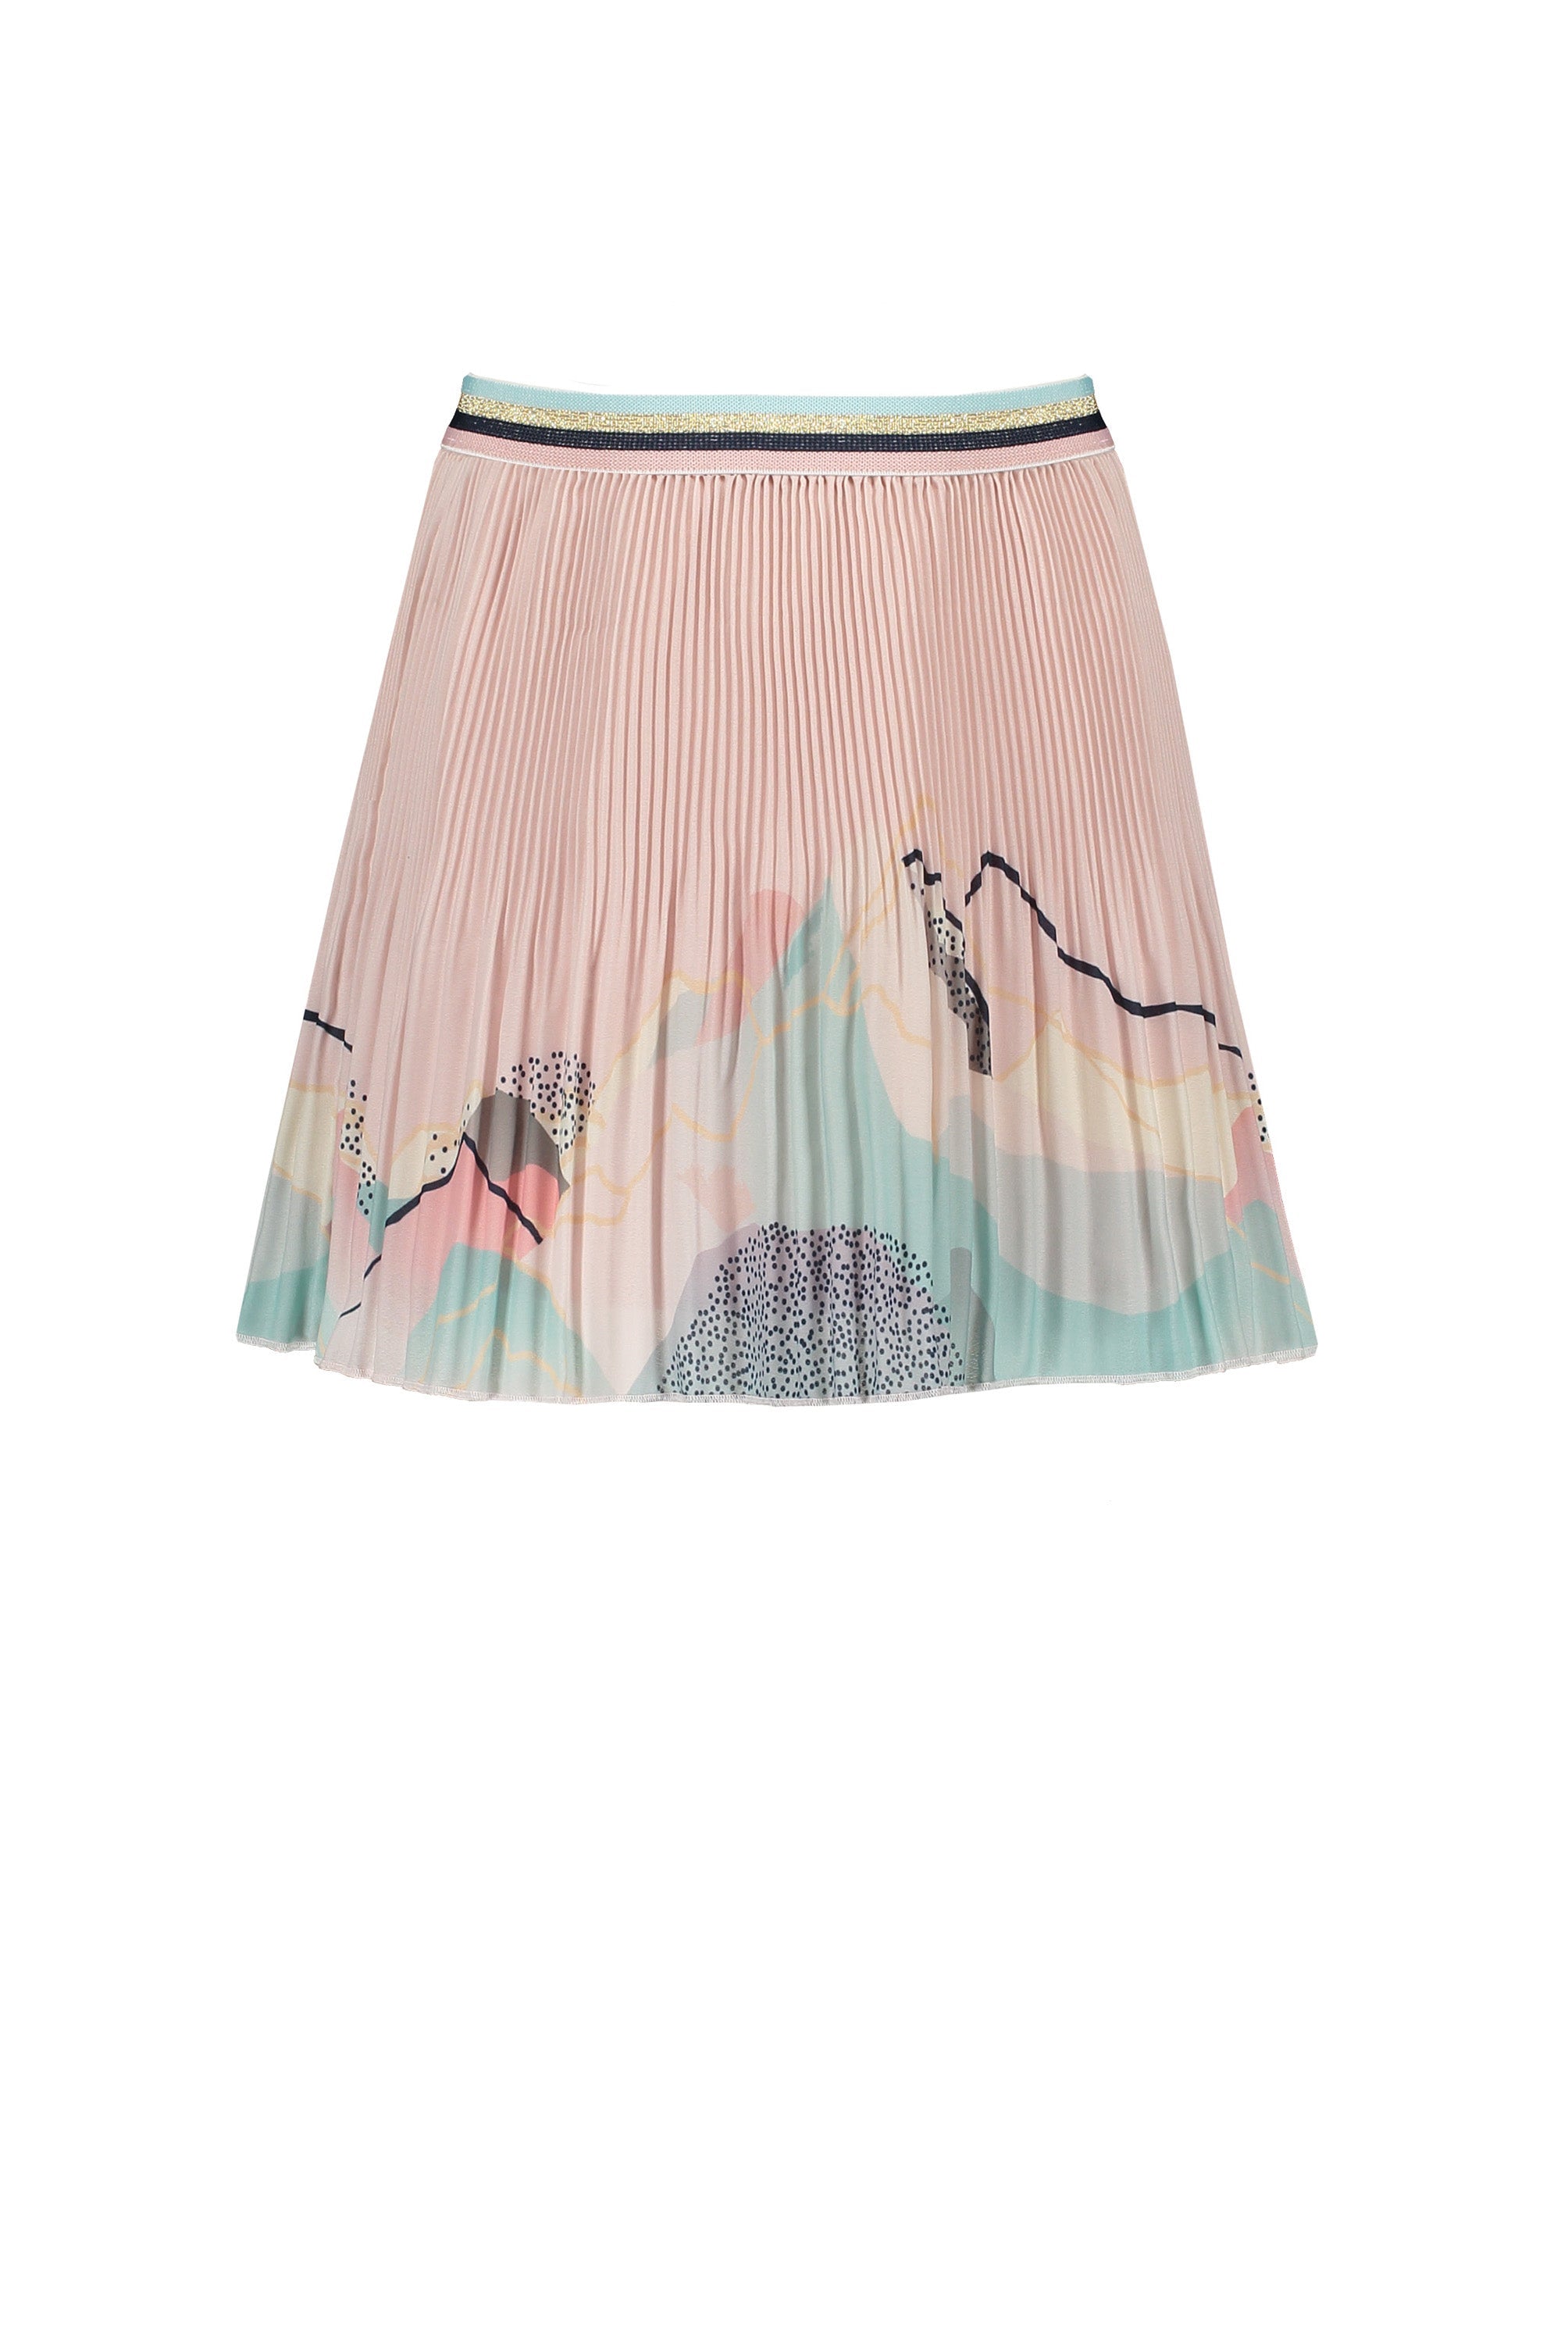 Meisjes Noel pleated short skirt with borderprint van NoNo in de kleur Rosy Sand in maat 146/152.